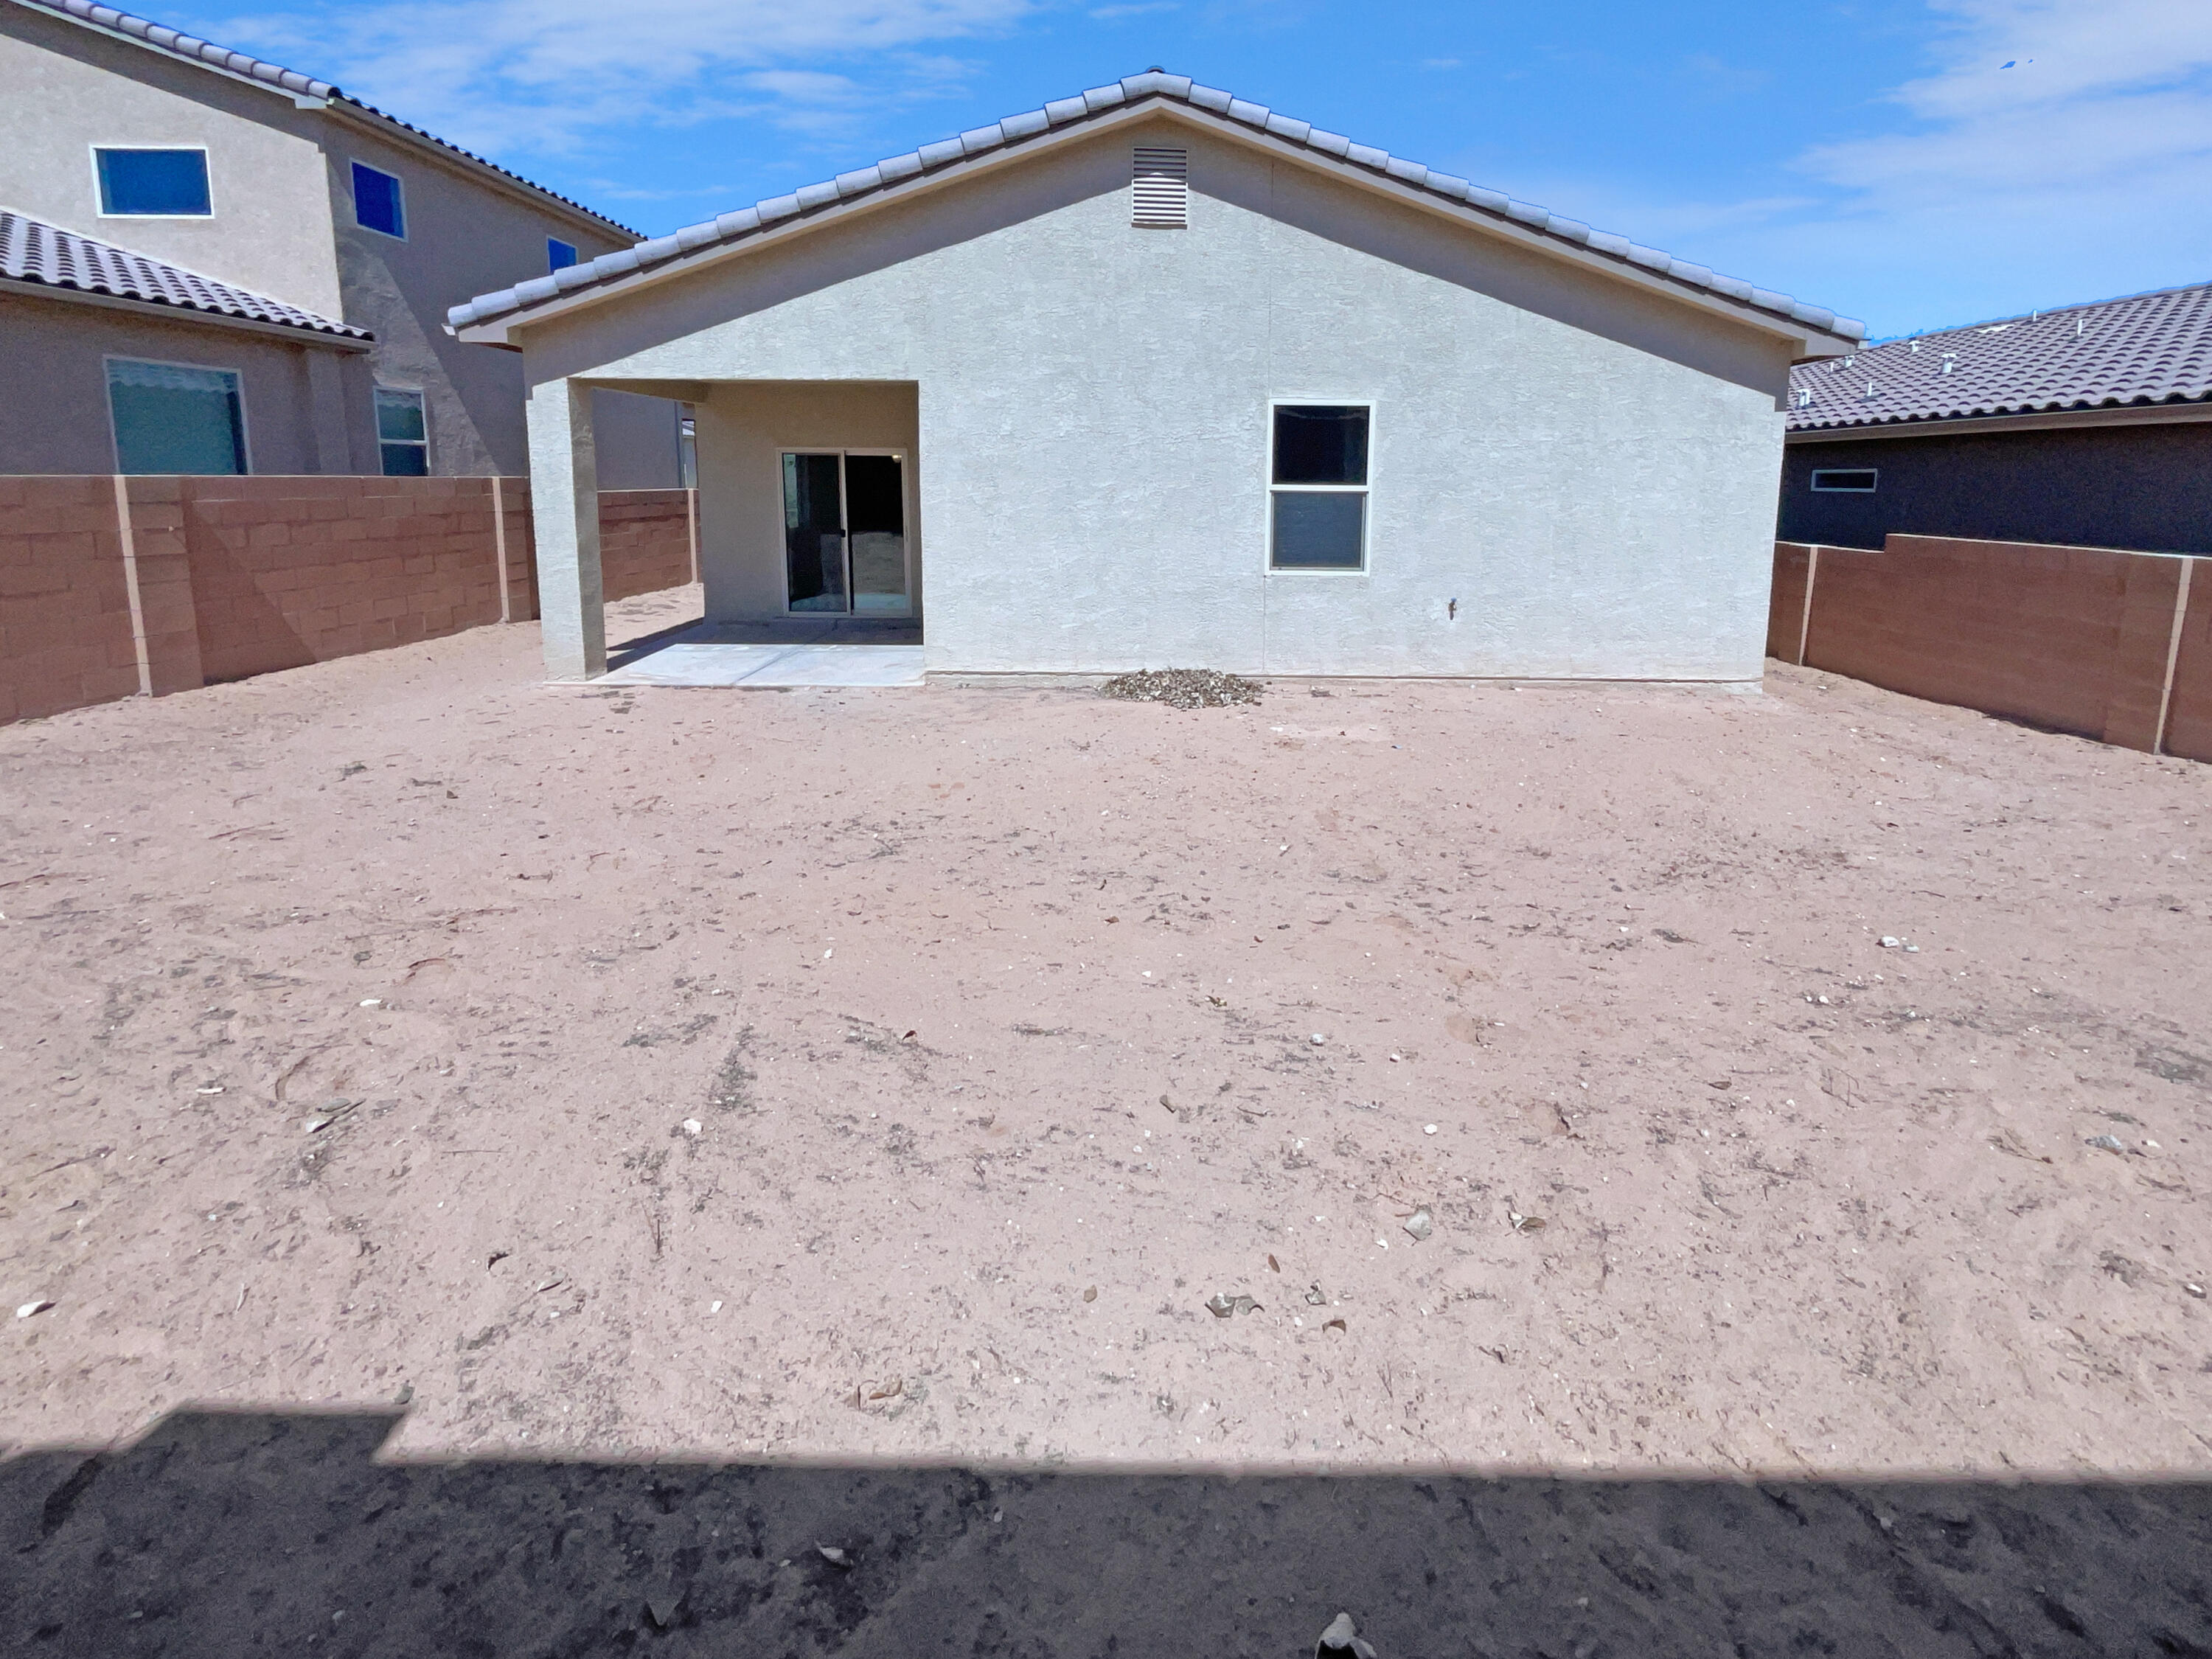 6912 Napoleon Road NE, Rio Rancho, New Mexico 87144, 3 Bedrooms Bedrooms, ,2 BathroomsBathrooms,Residential,For Sale,6912 Napoleon Road NE,1059170